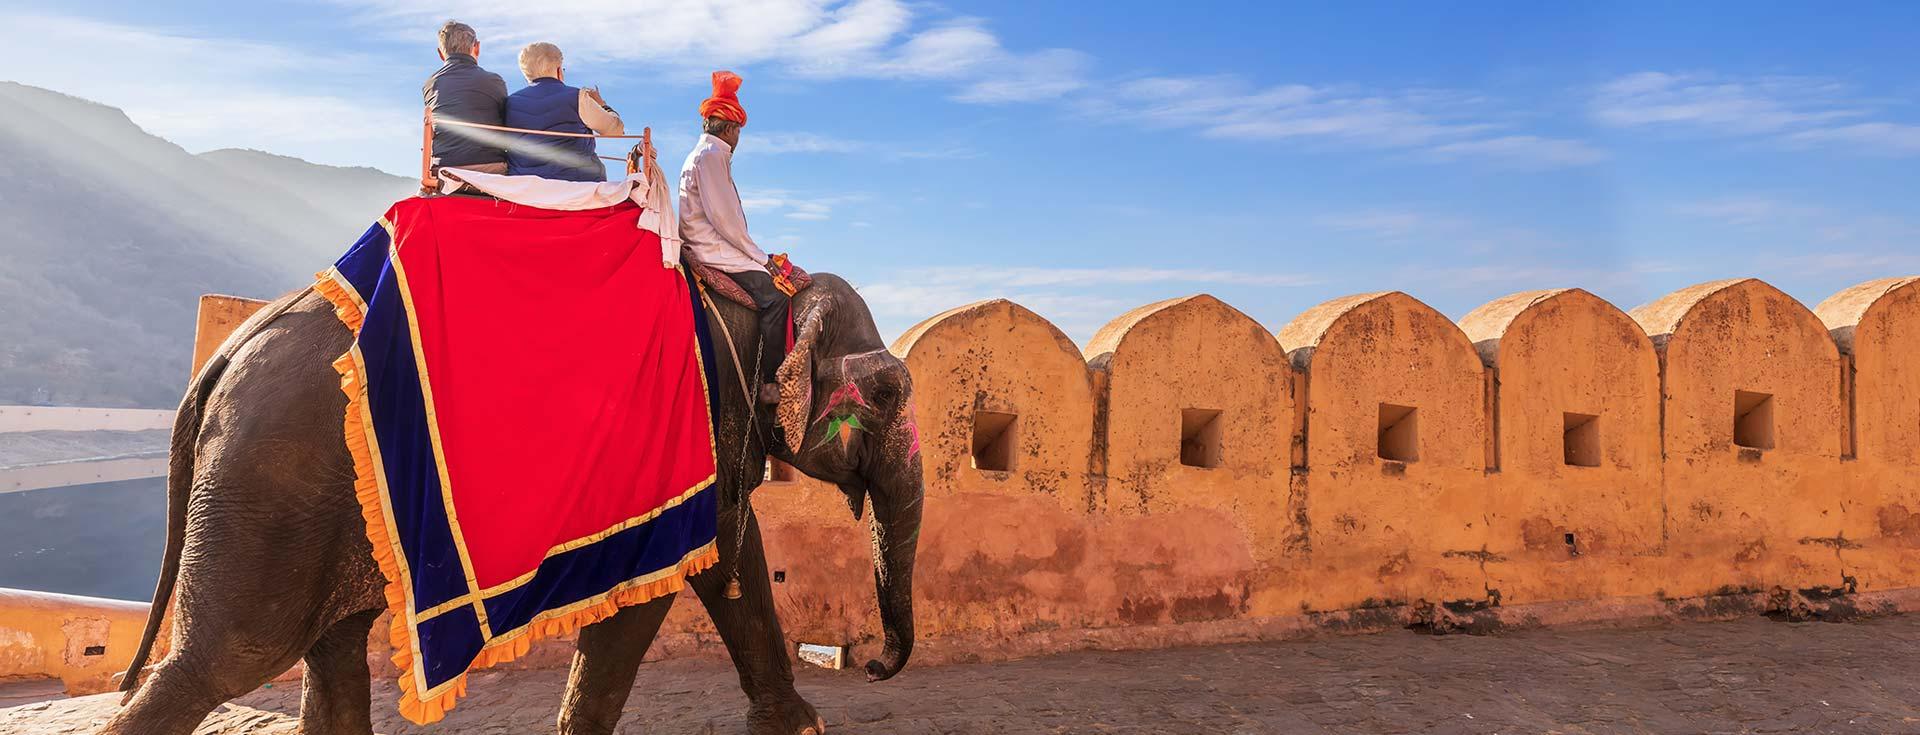 Adventure - The Leela Palace Jaipur